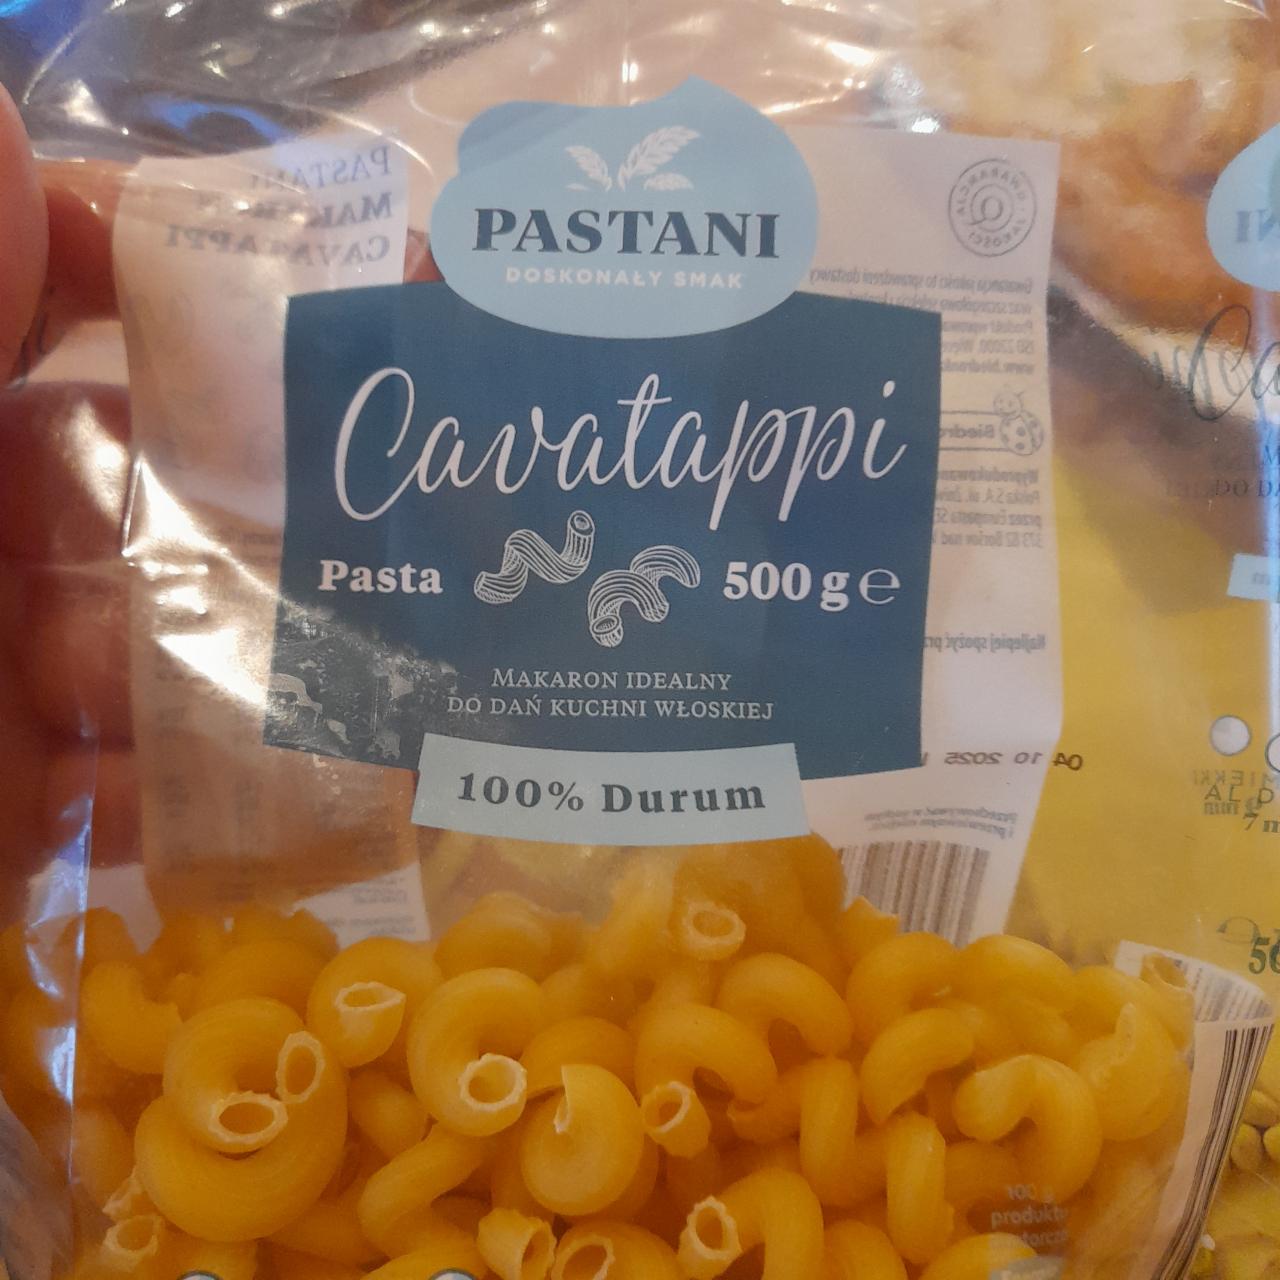 Фото - Макарони Pasta 100% Durum Pastani Cavatappi